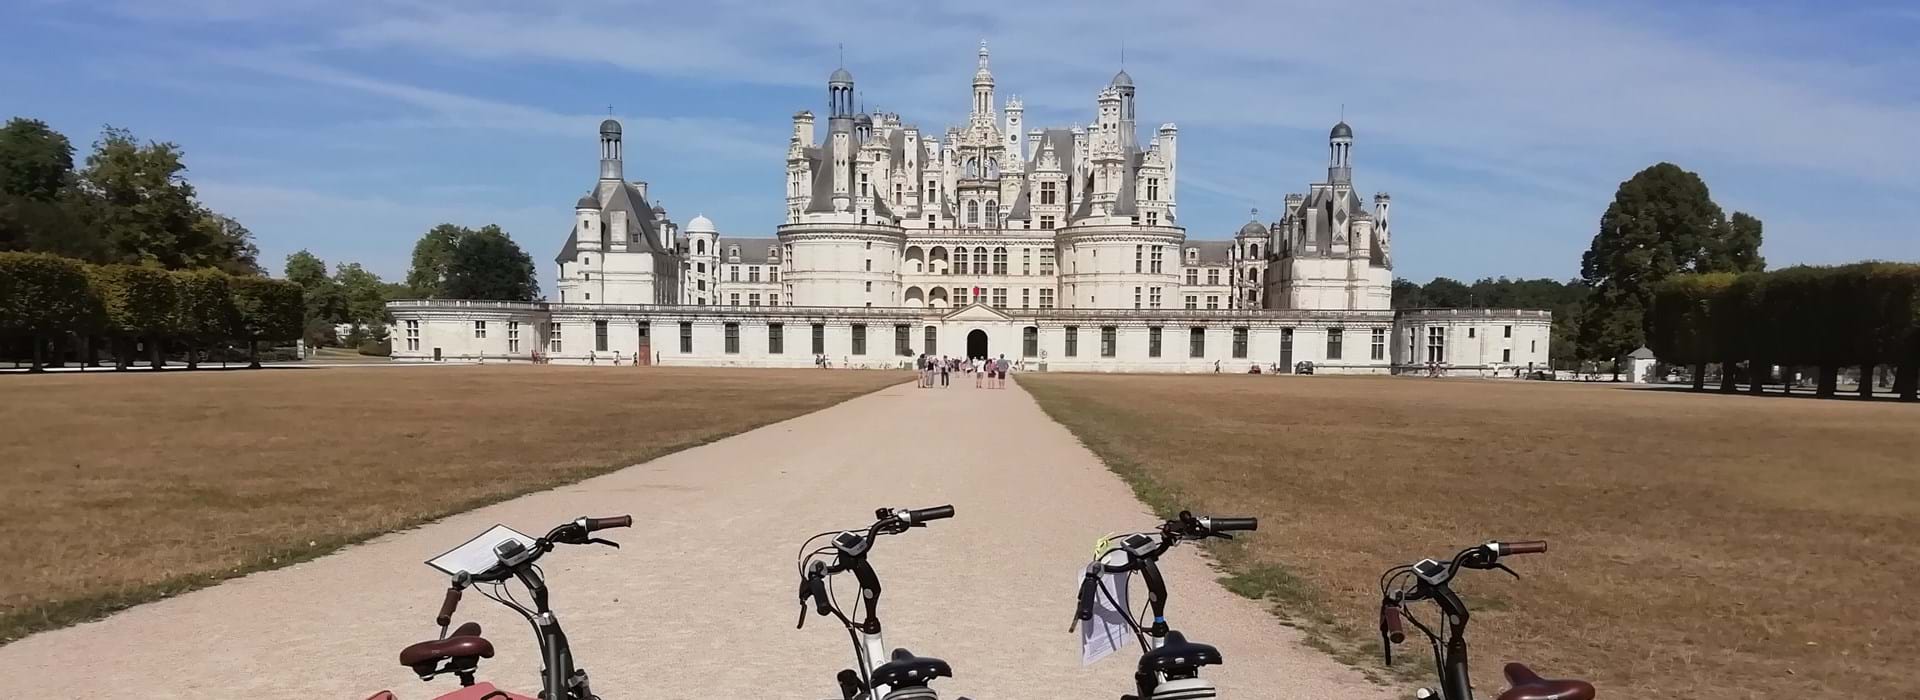 frankrijk loire-kasteel-chambord-met-fietsen-2-2019-051